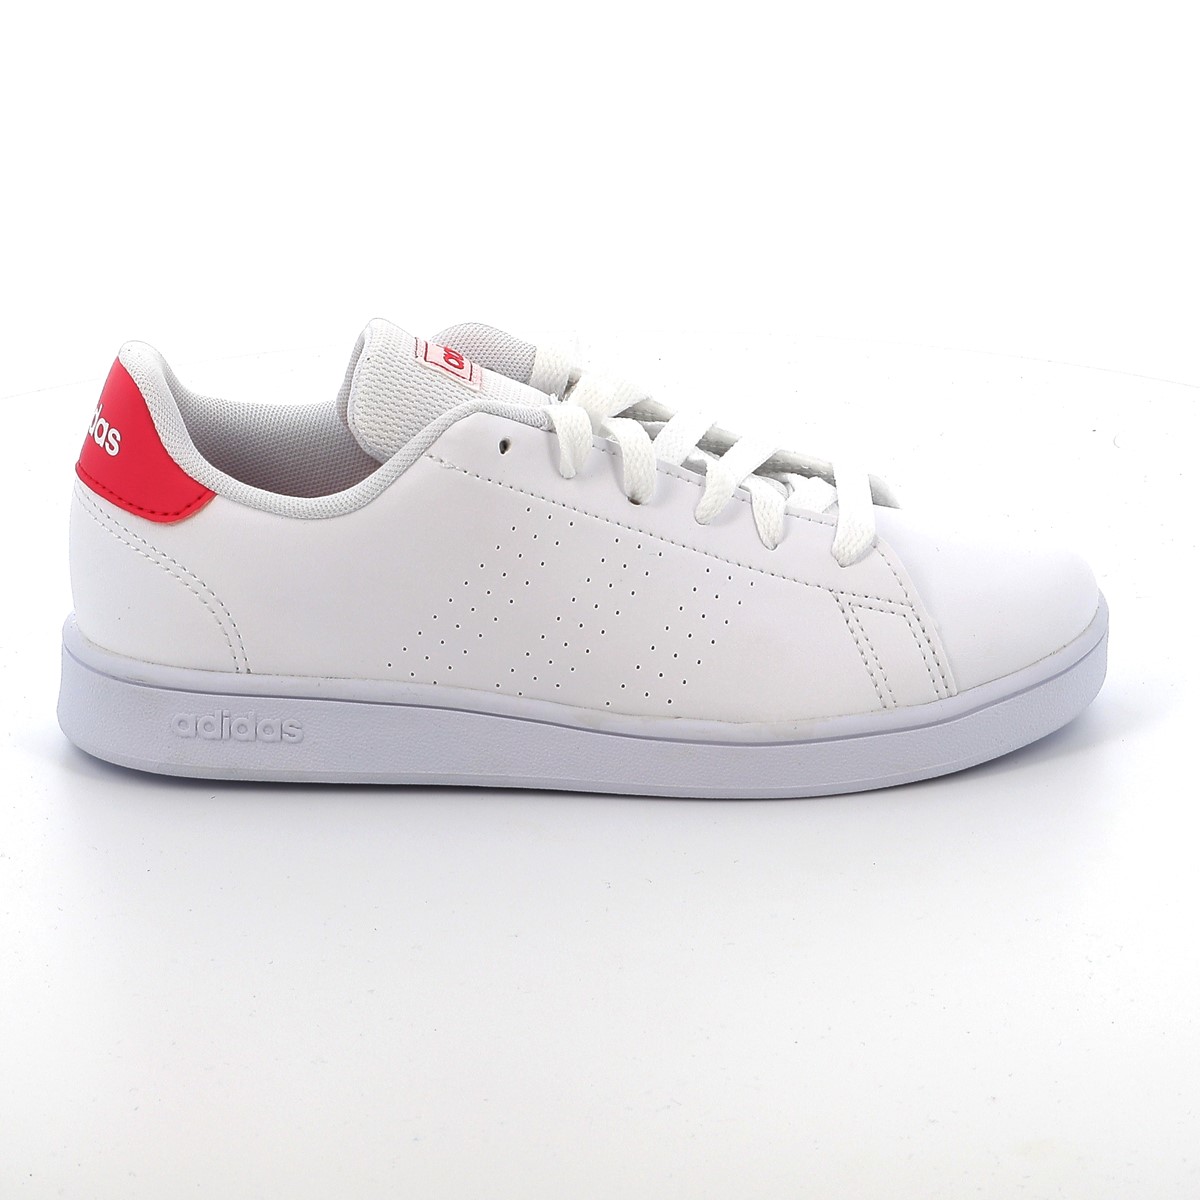 Παιδικό Αθλητικό Παπούτσι Κορίτσι Adidas Advantage K Χρώματος Λευκό EF0211 - ADIDAS - 